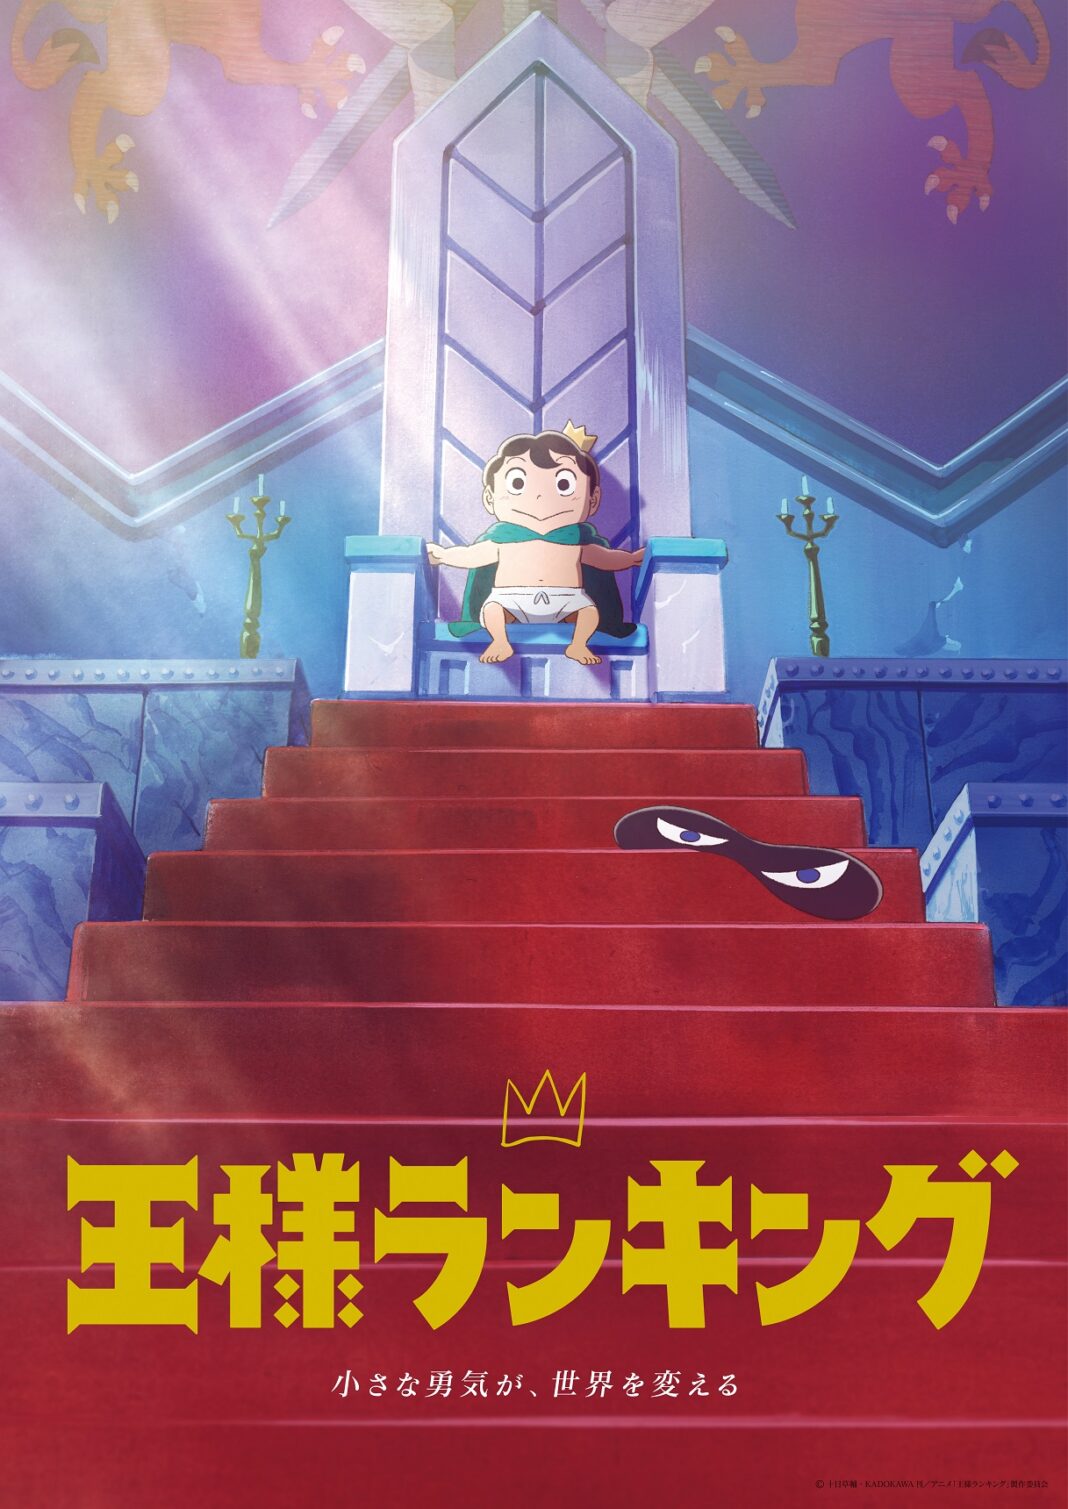 TVアニメ「王様ランキング」Blu-ray&DVD BOX、オリジナルサウンドトラック発売決定！各巻の特典内容も公開！のメイン画像